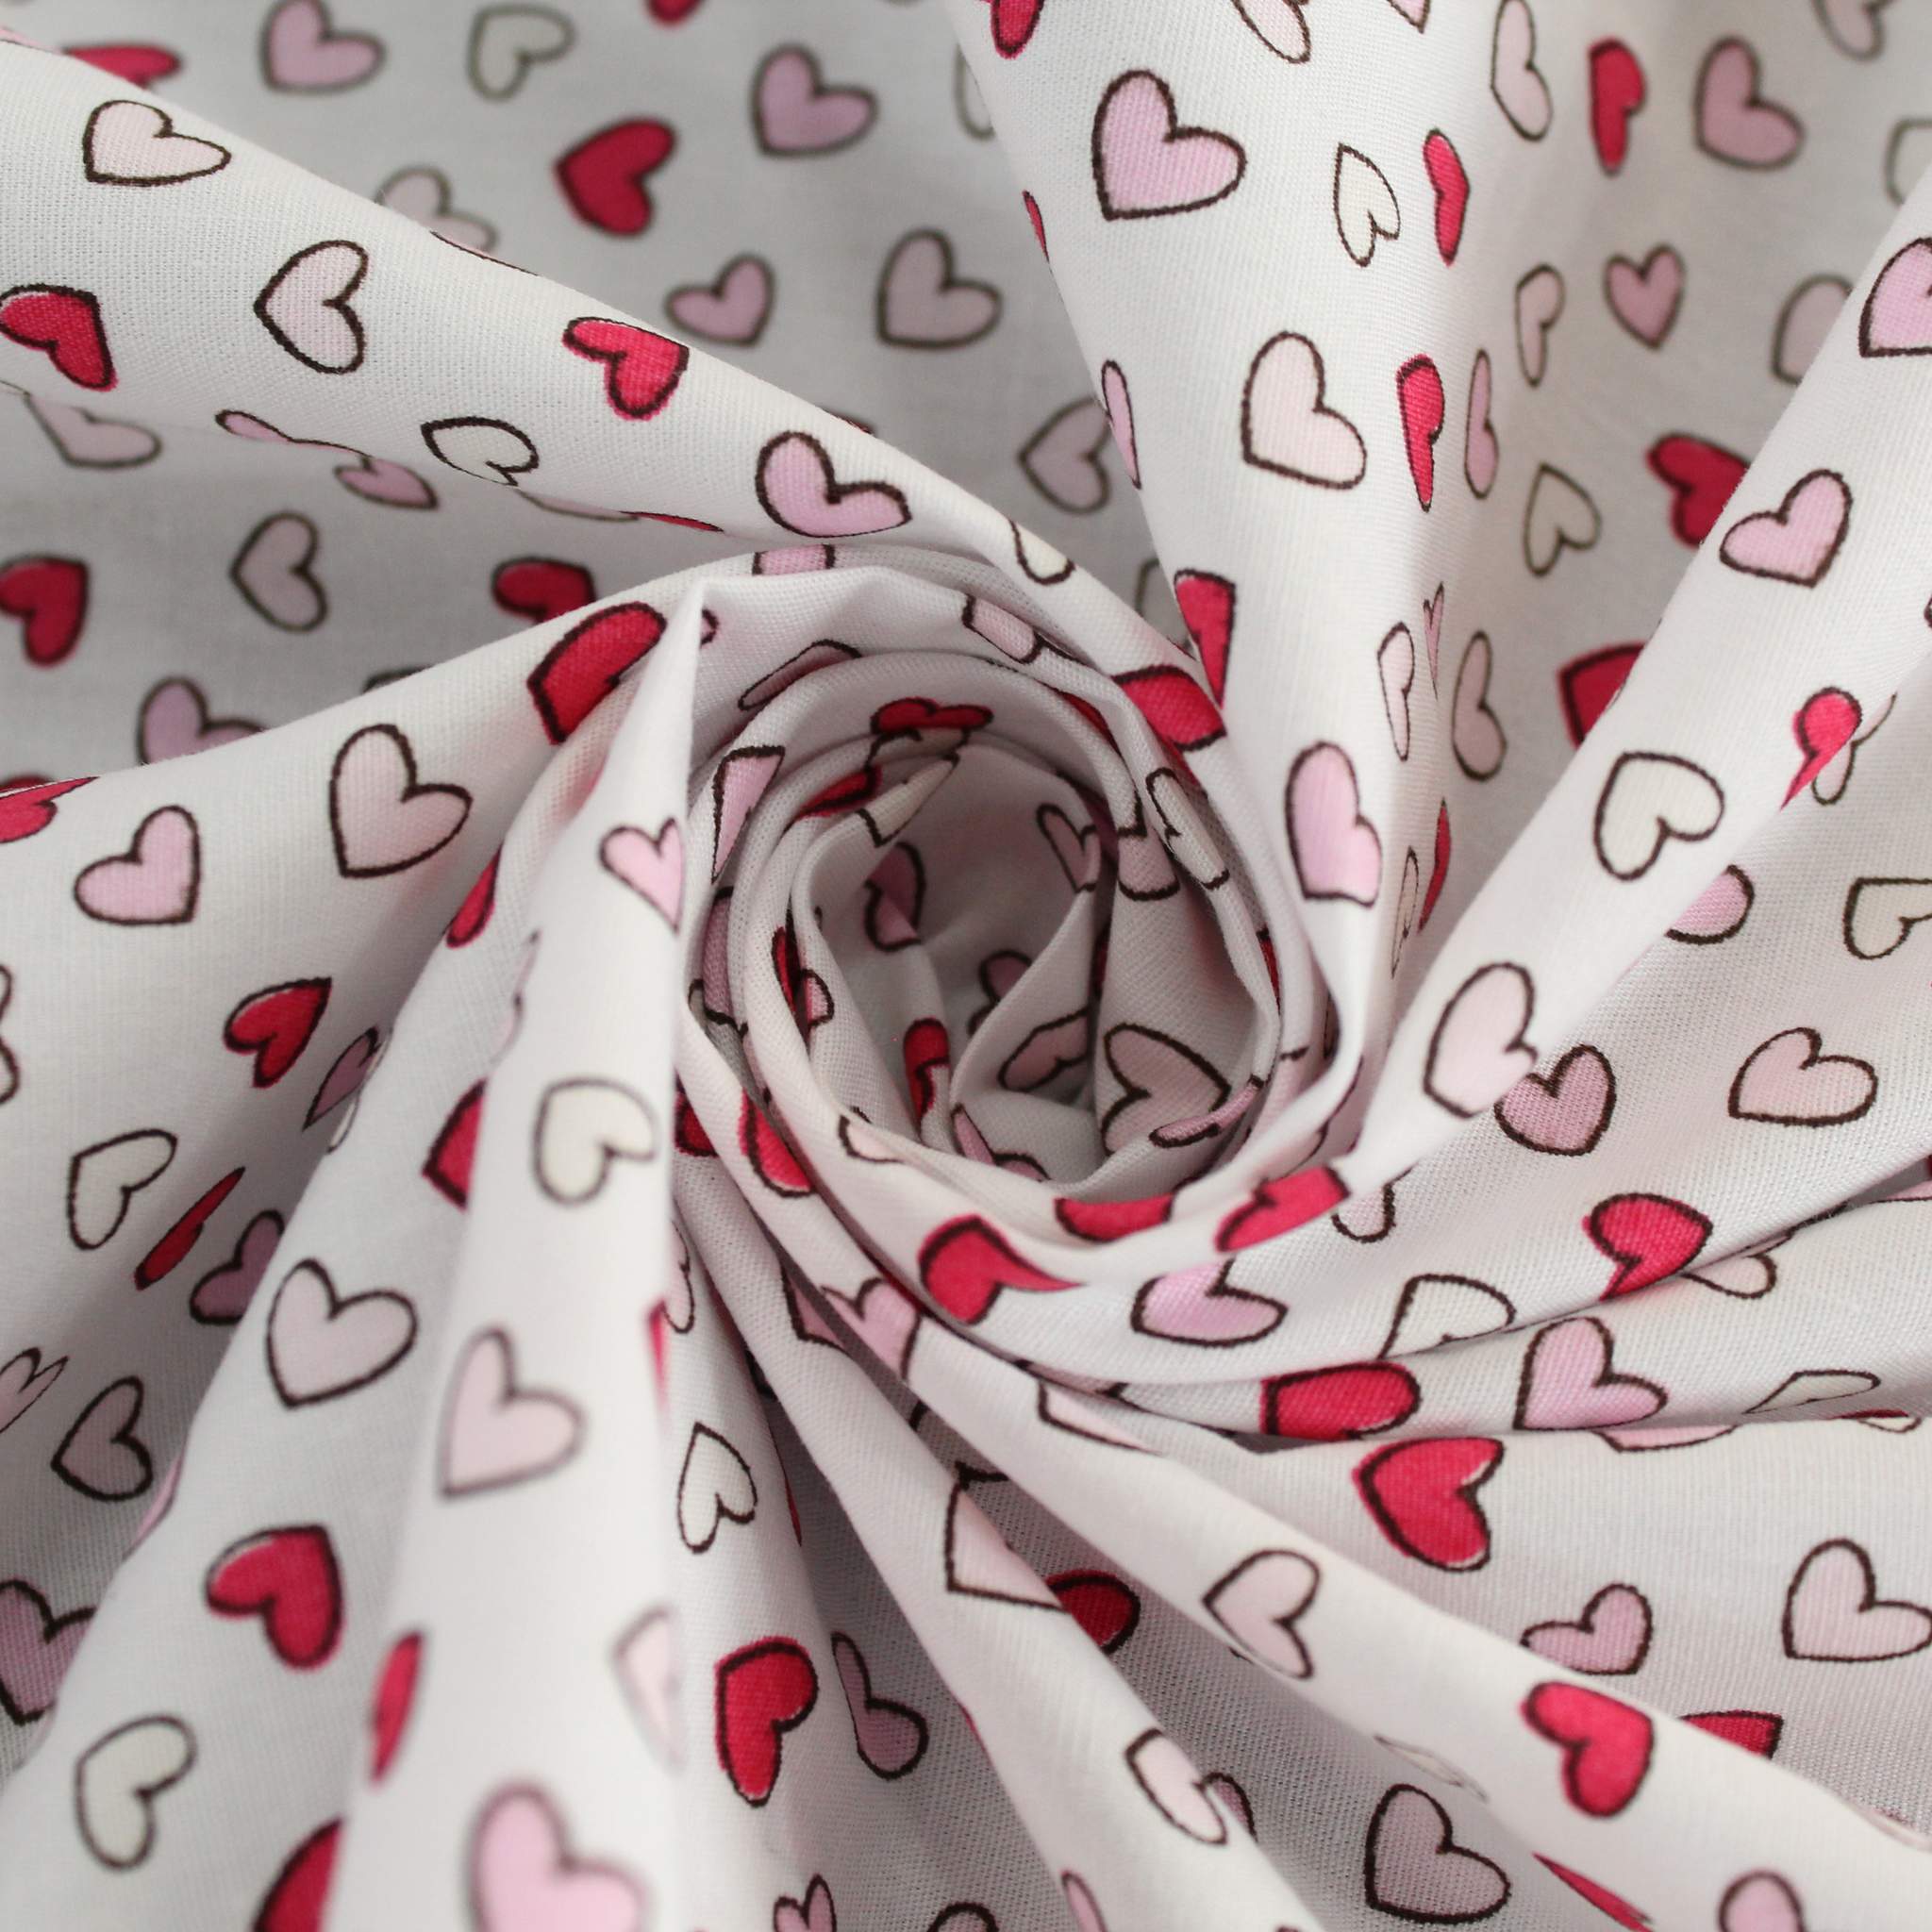 Premium Quality 100% Cotton - Love Hearts Bundle